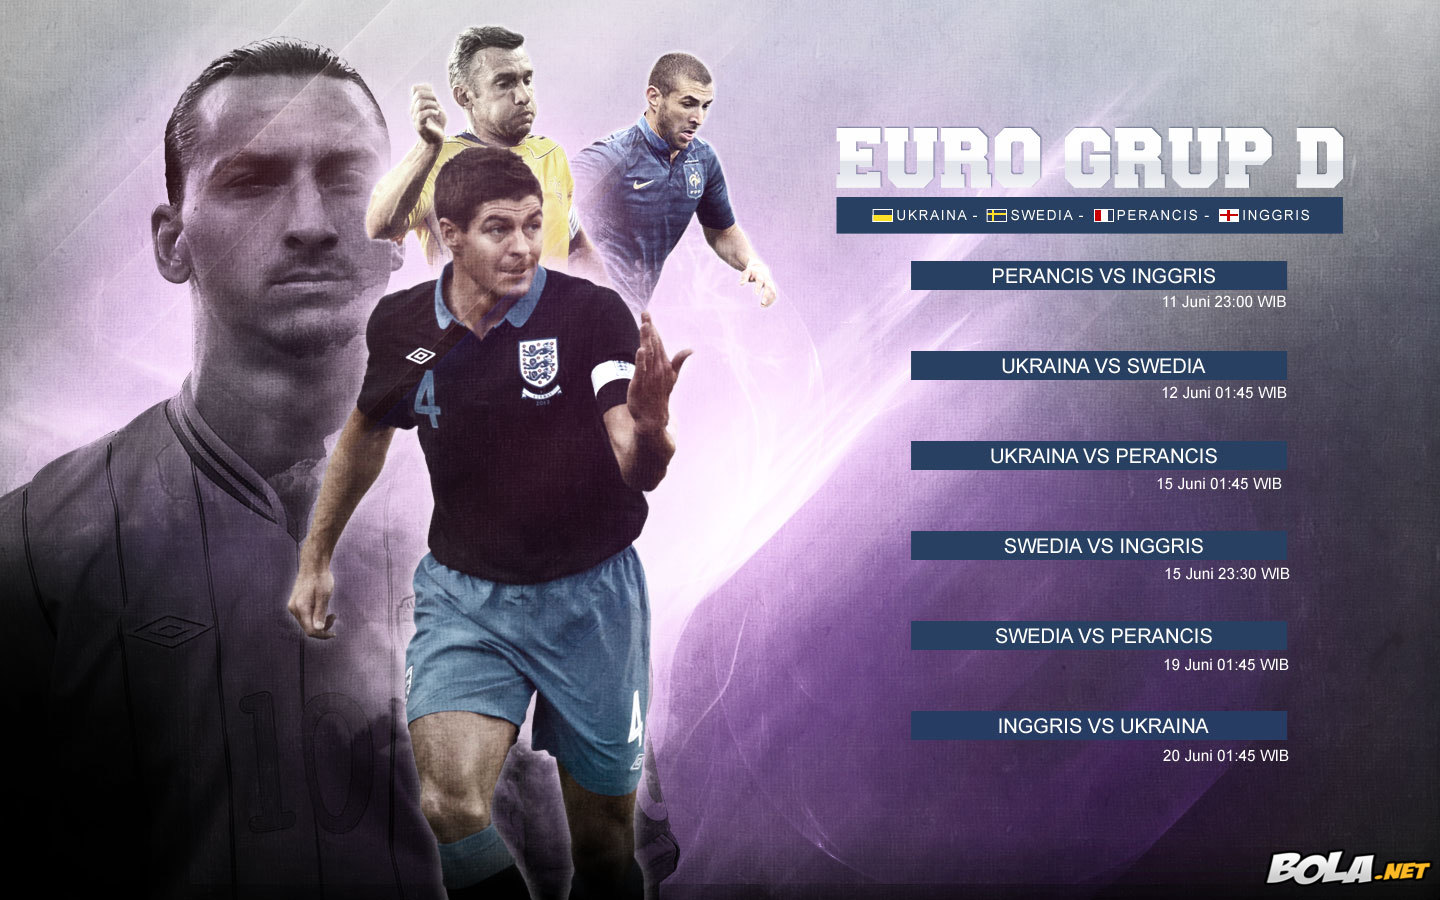 Deskripsi : Wallpaper Jadwal Grup D Euro 2012, size: 1440x900